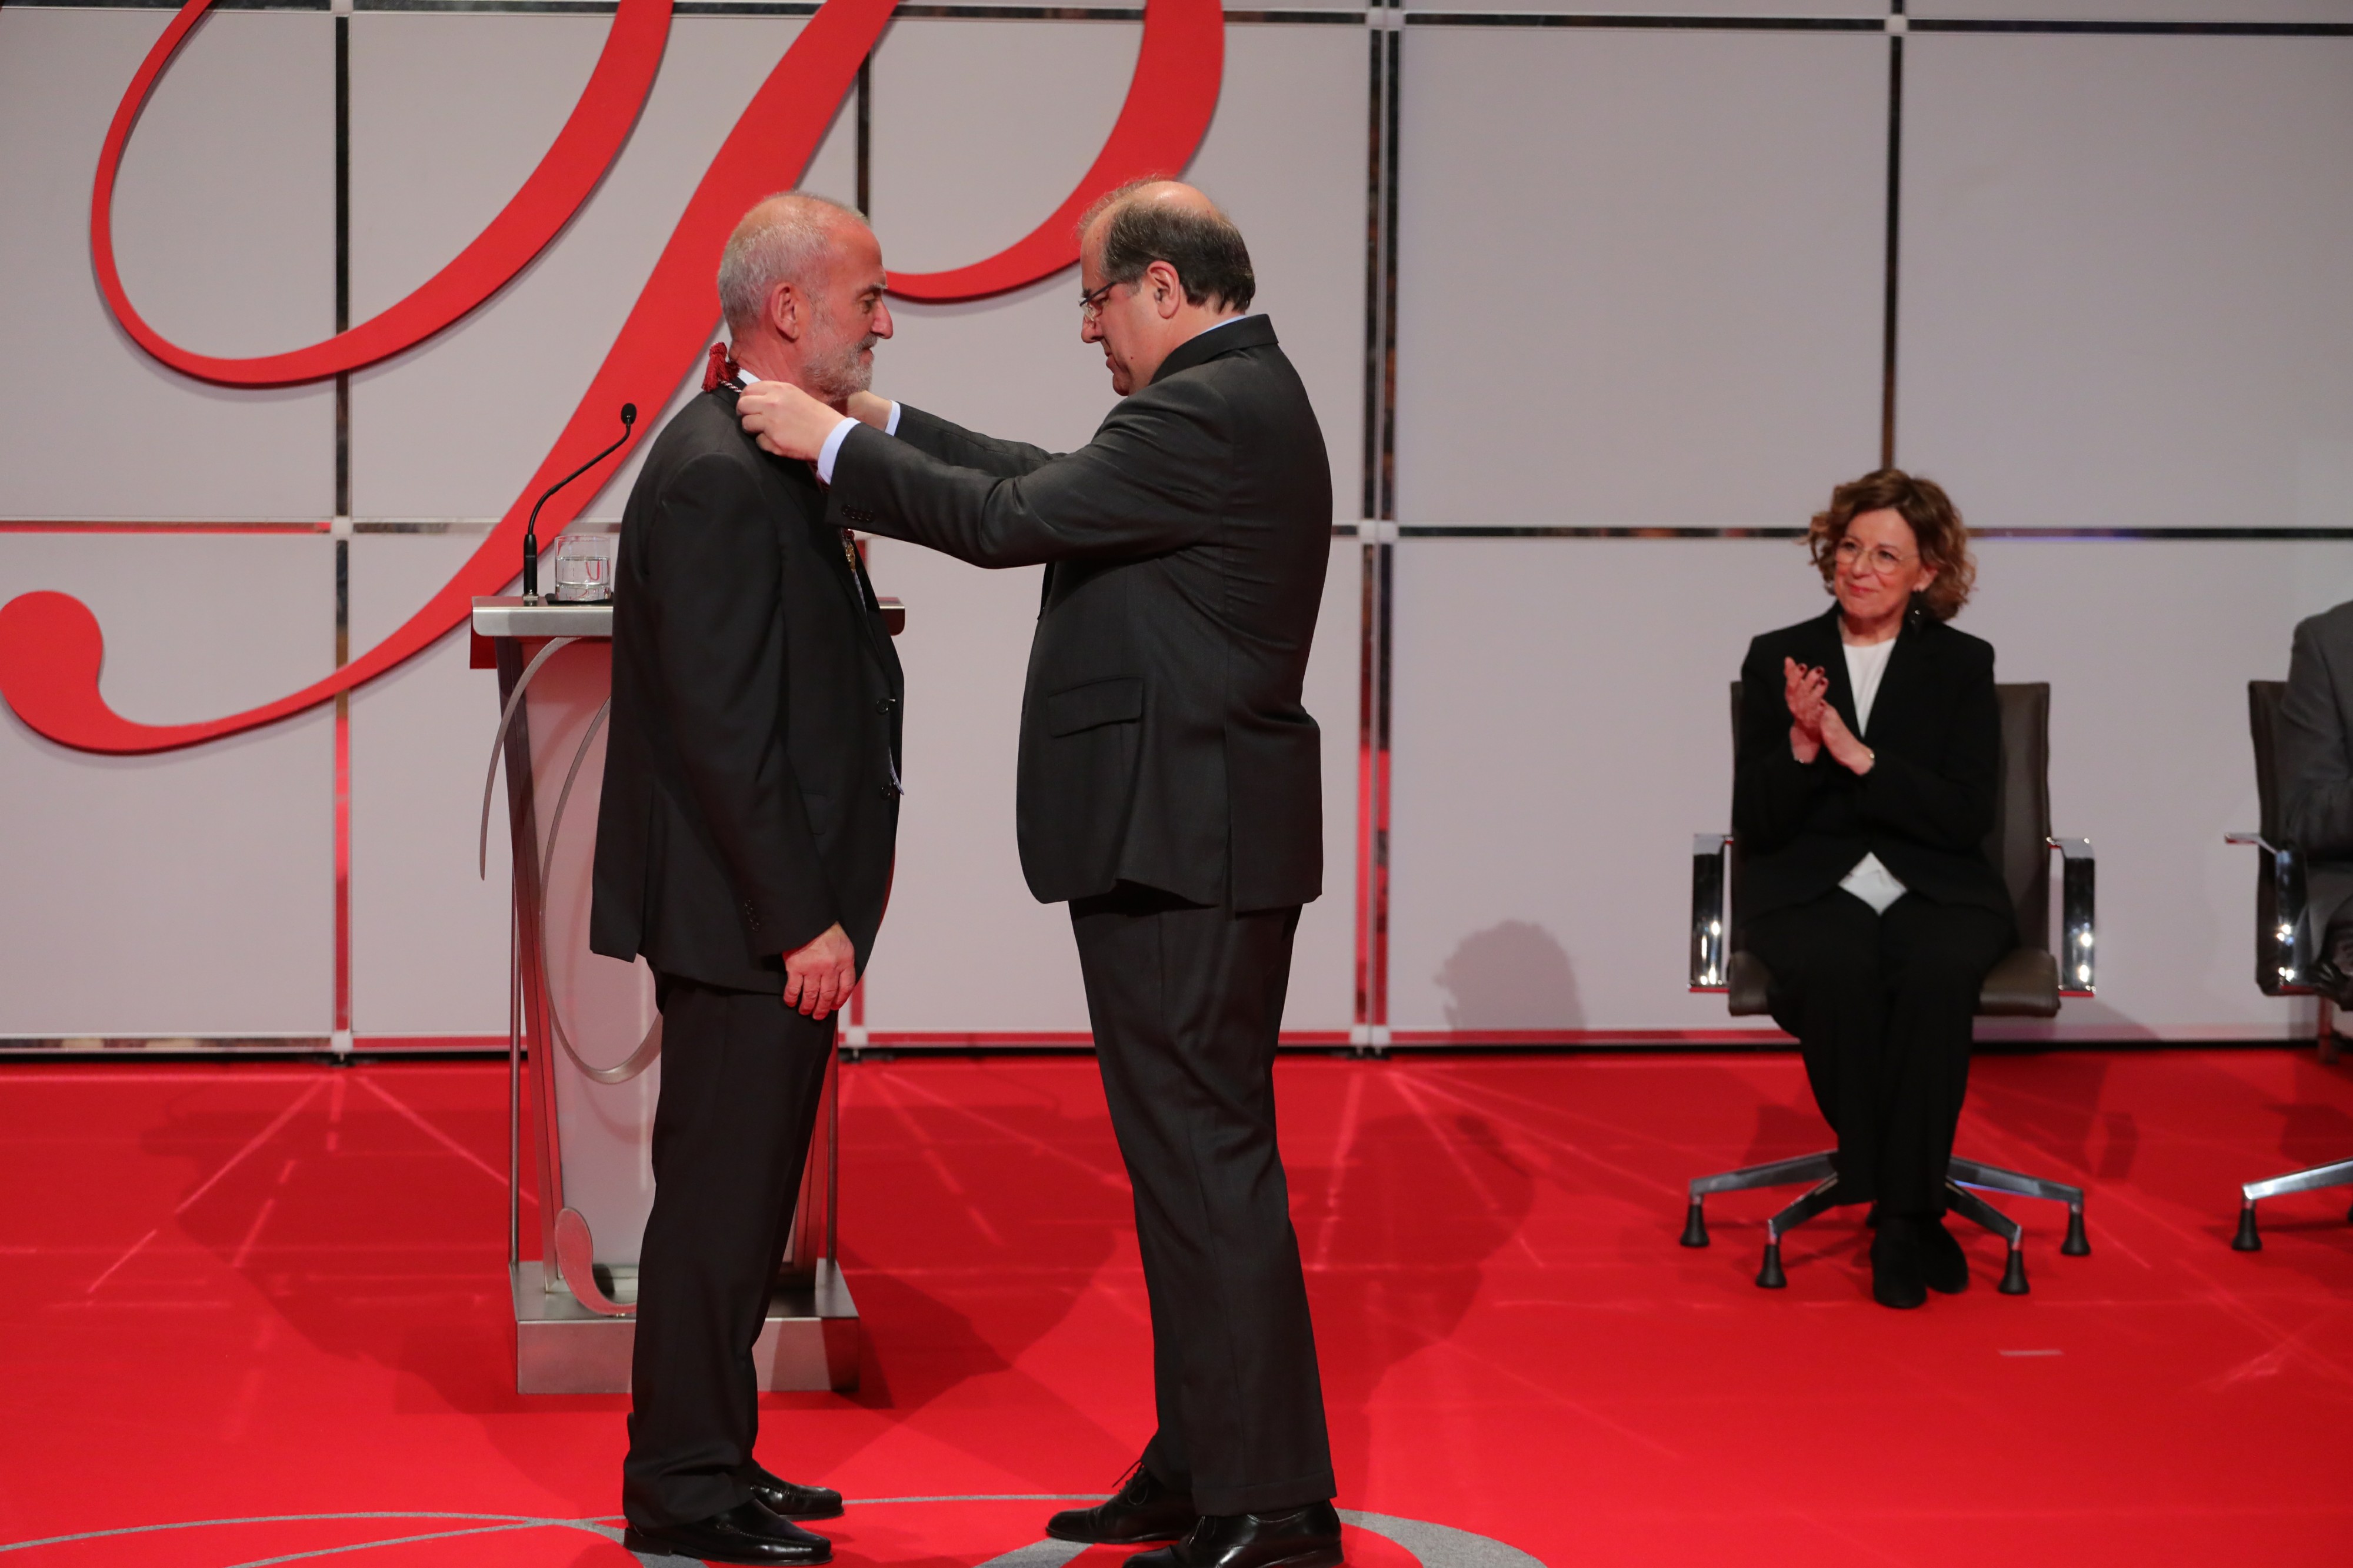 El catedrático de Química Inorgánica de la USAL Vicente Rives recibe el Premio Castilla y León de Investigación Científica y Técnica e Innovación 2018